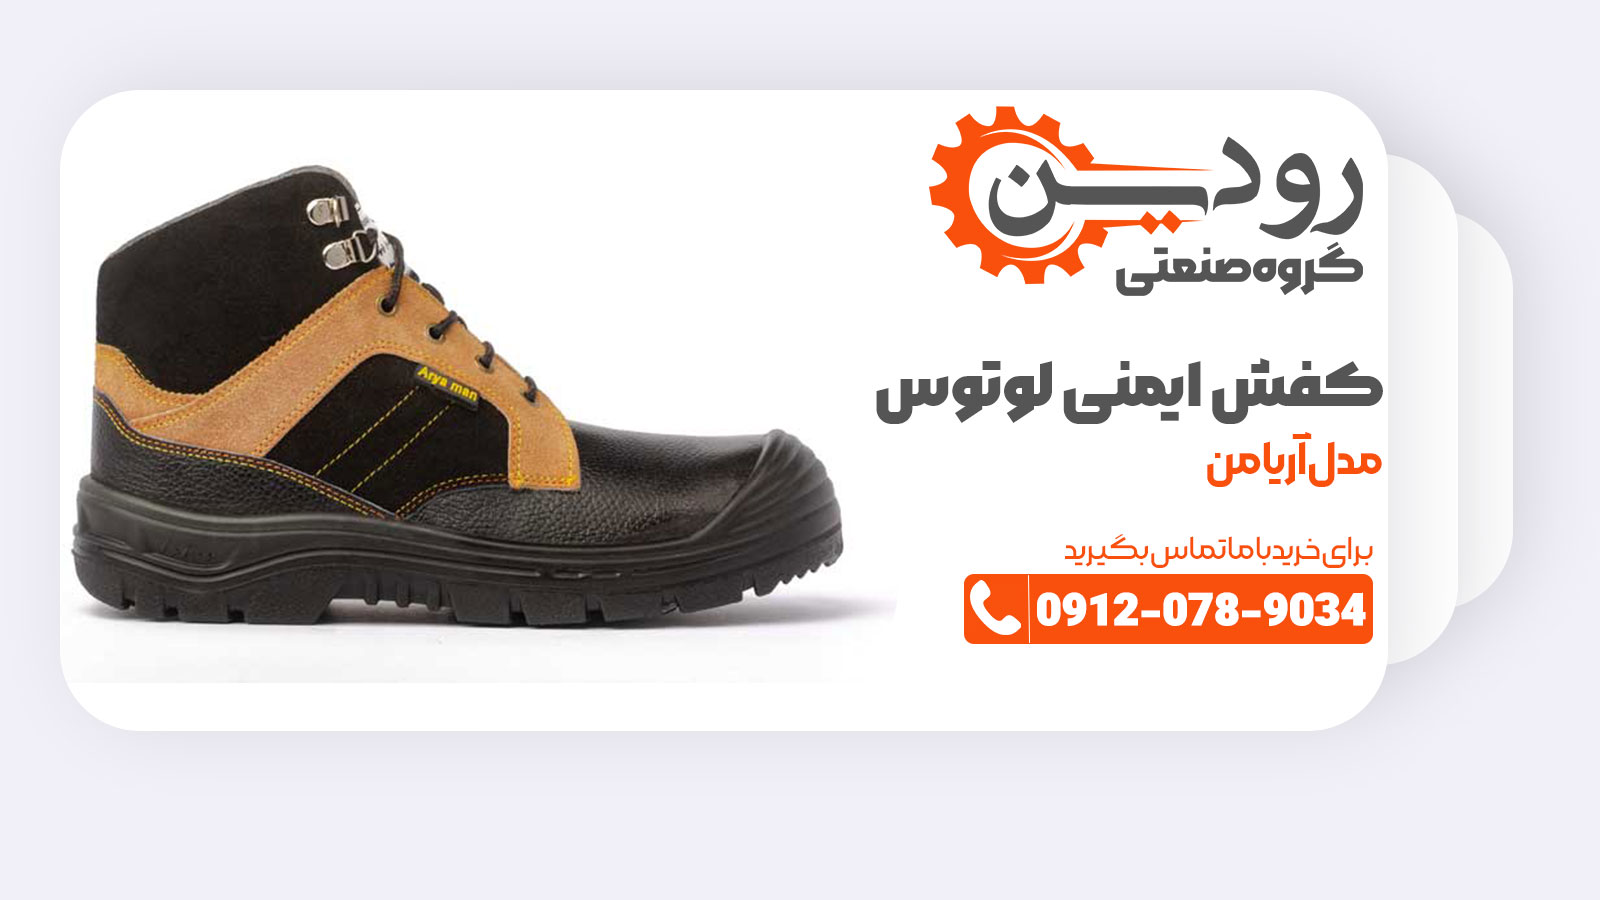 کفش ایمنی لوتوس برندی معتبر میان تولید کنندگان کفش ایمنی تبریز میباشد.